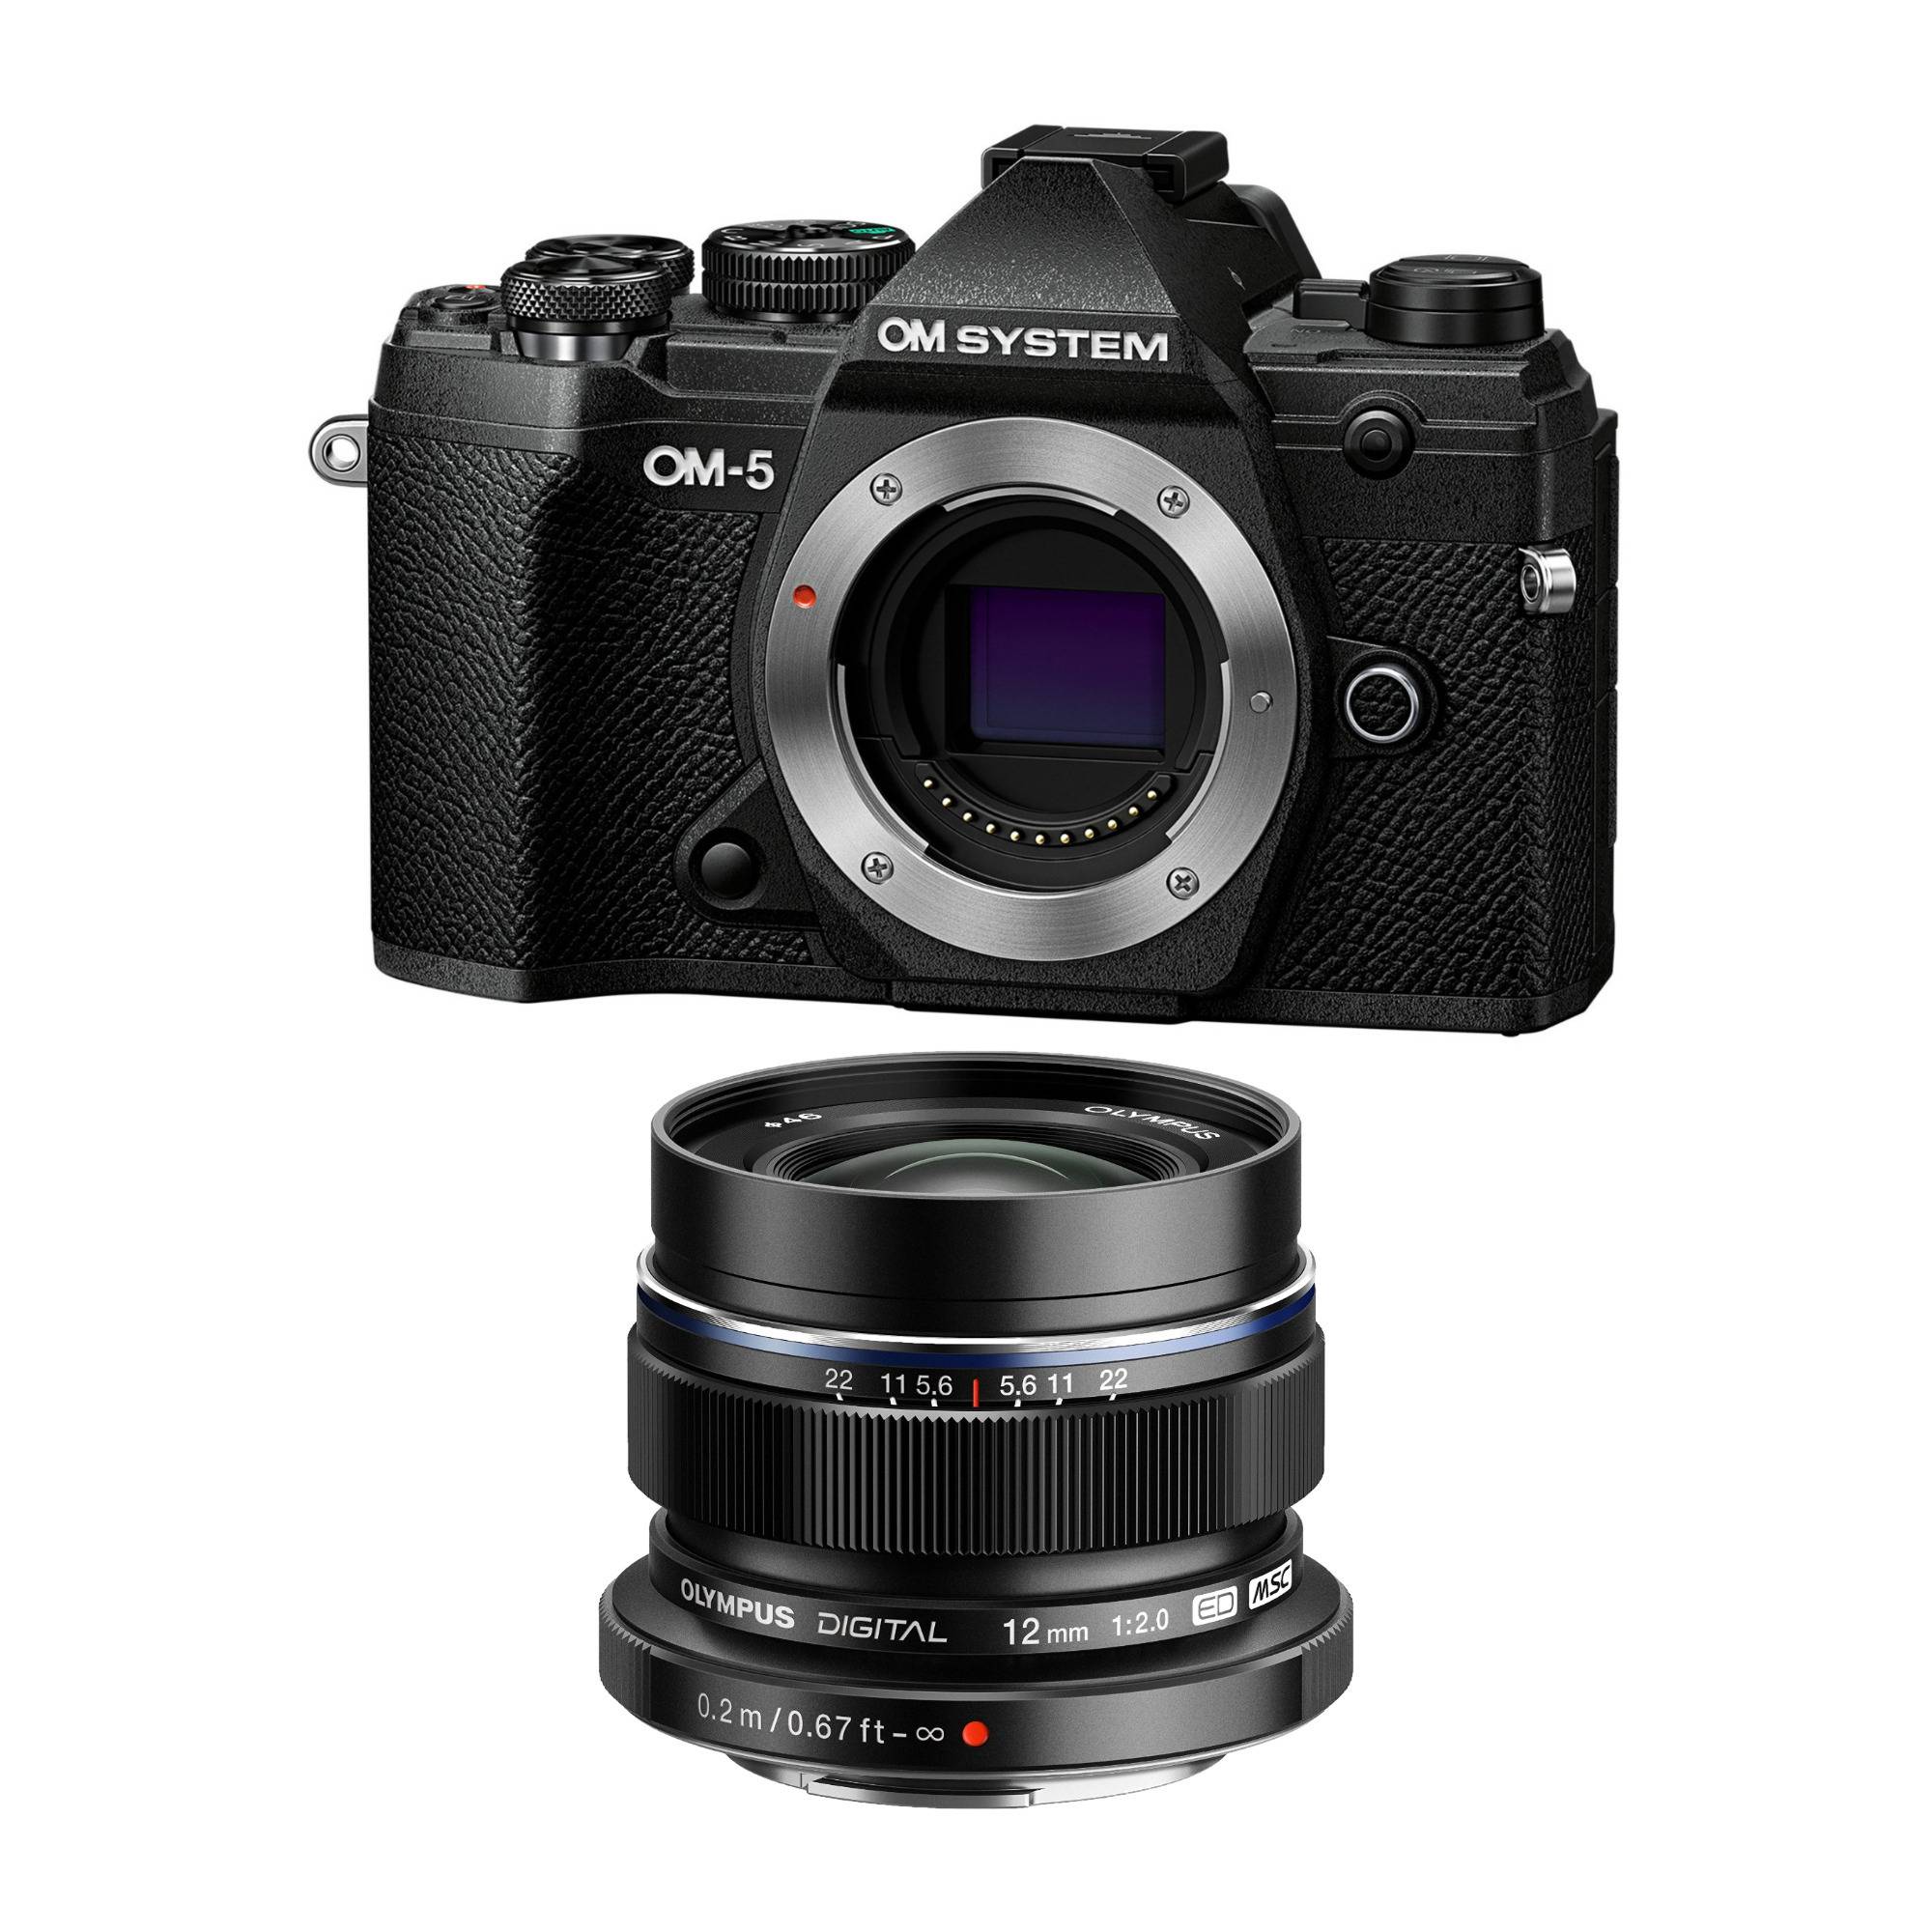 Olympus OM System OM-5 Camera Body (Black) Bundle with Olympus M.Zuiko Digital ED 12mm f/2.0 Lens